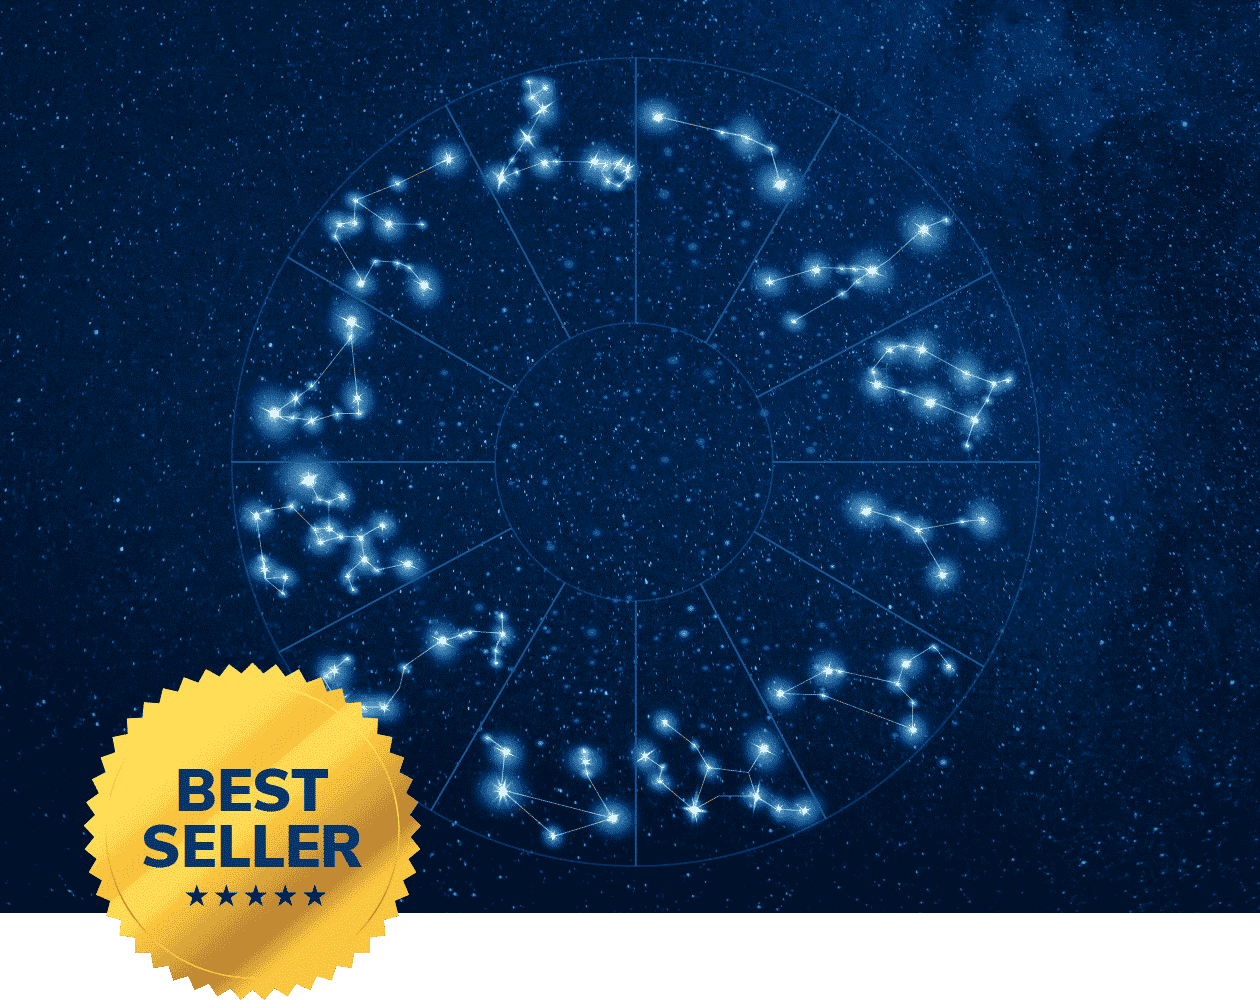 Porte-clés constellation gravé Carte du ciel étoilé personnalisé